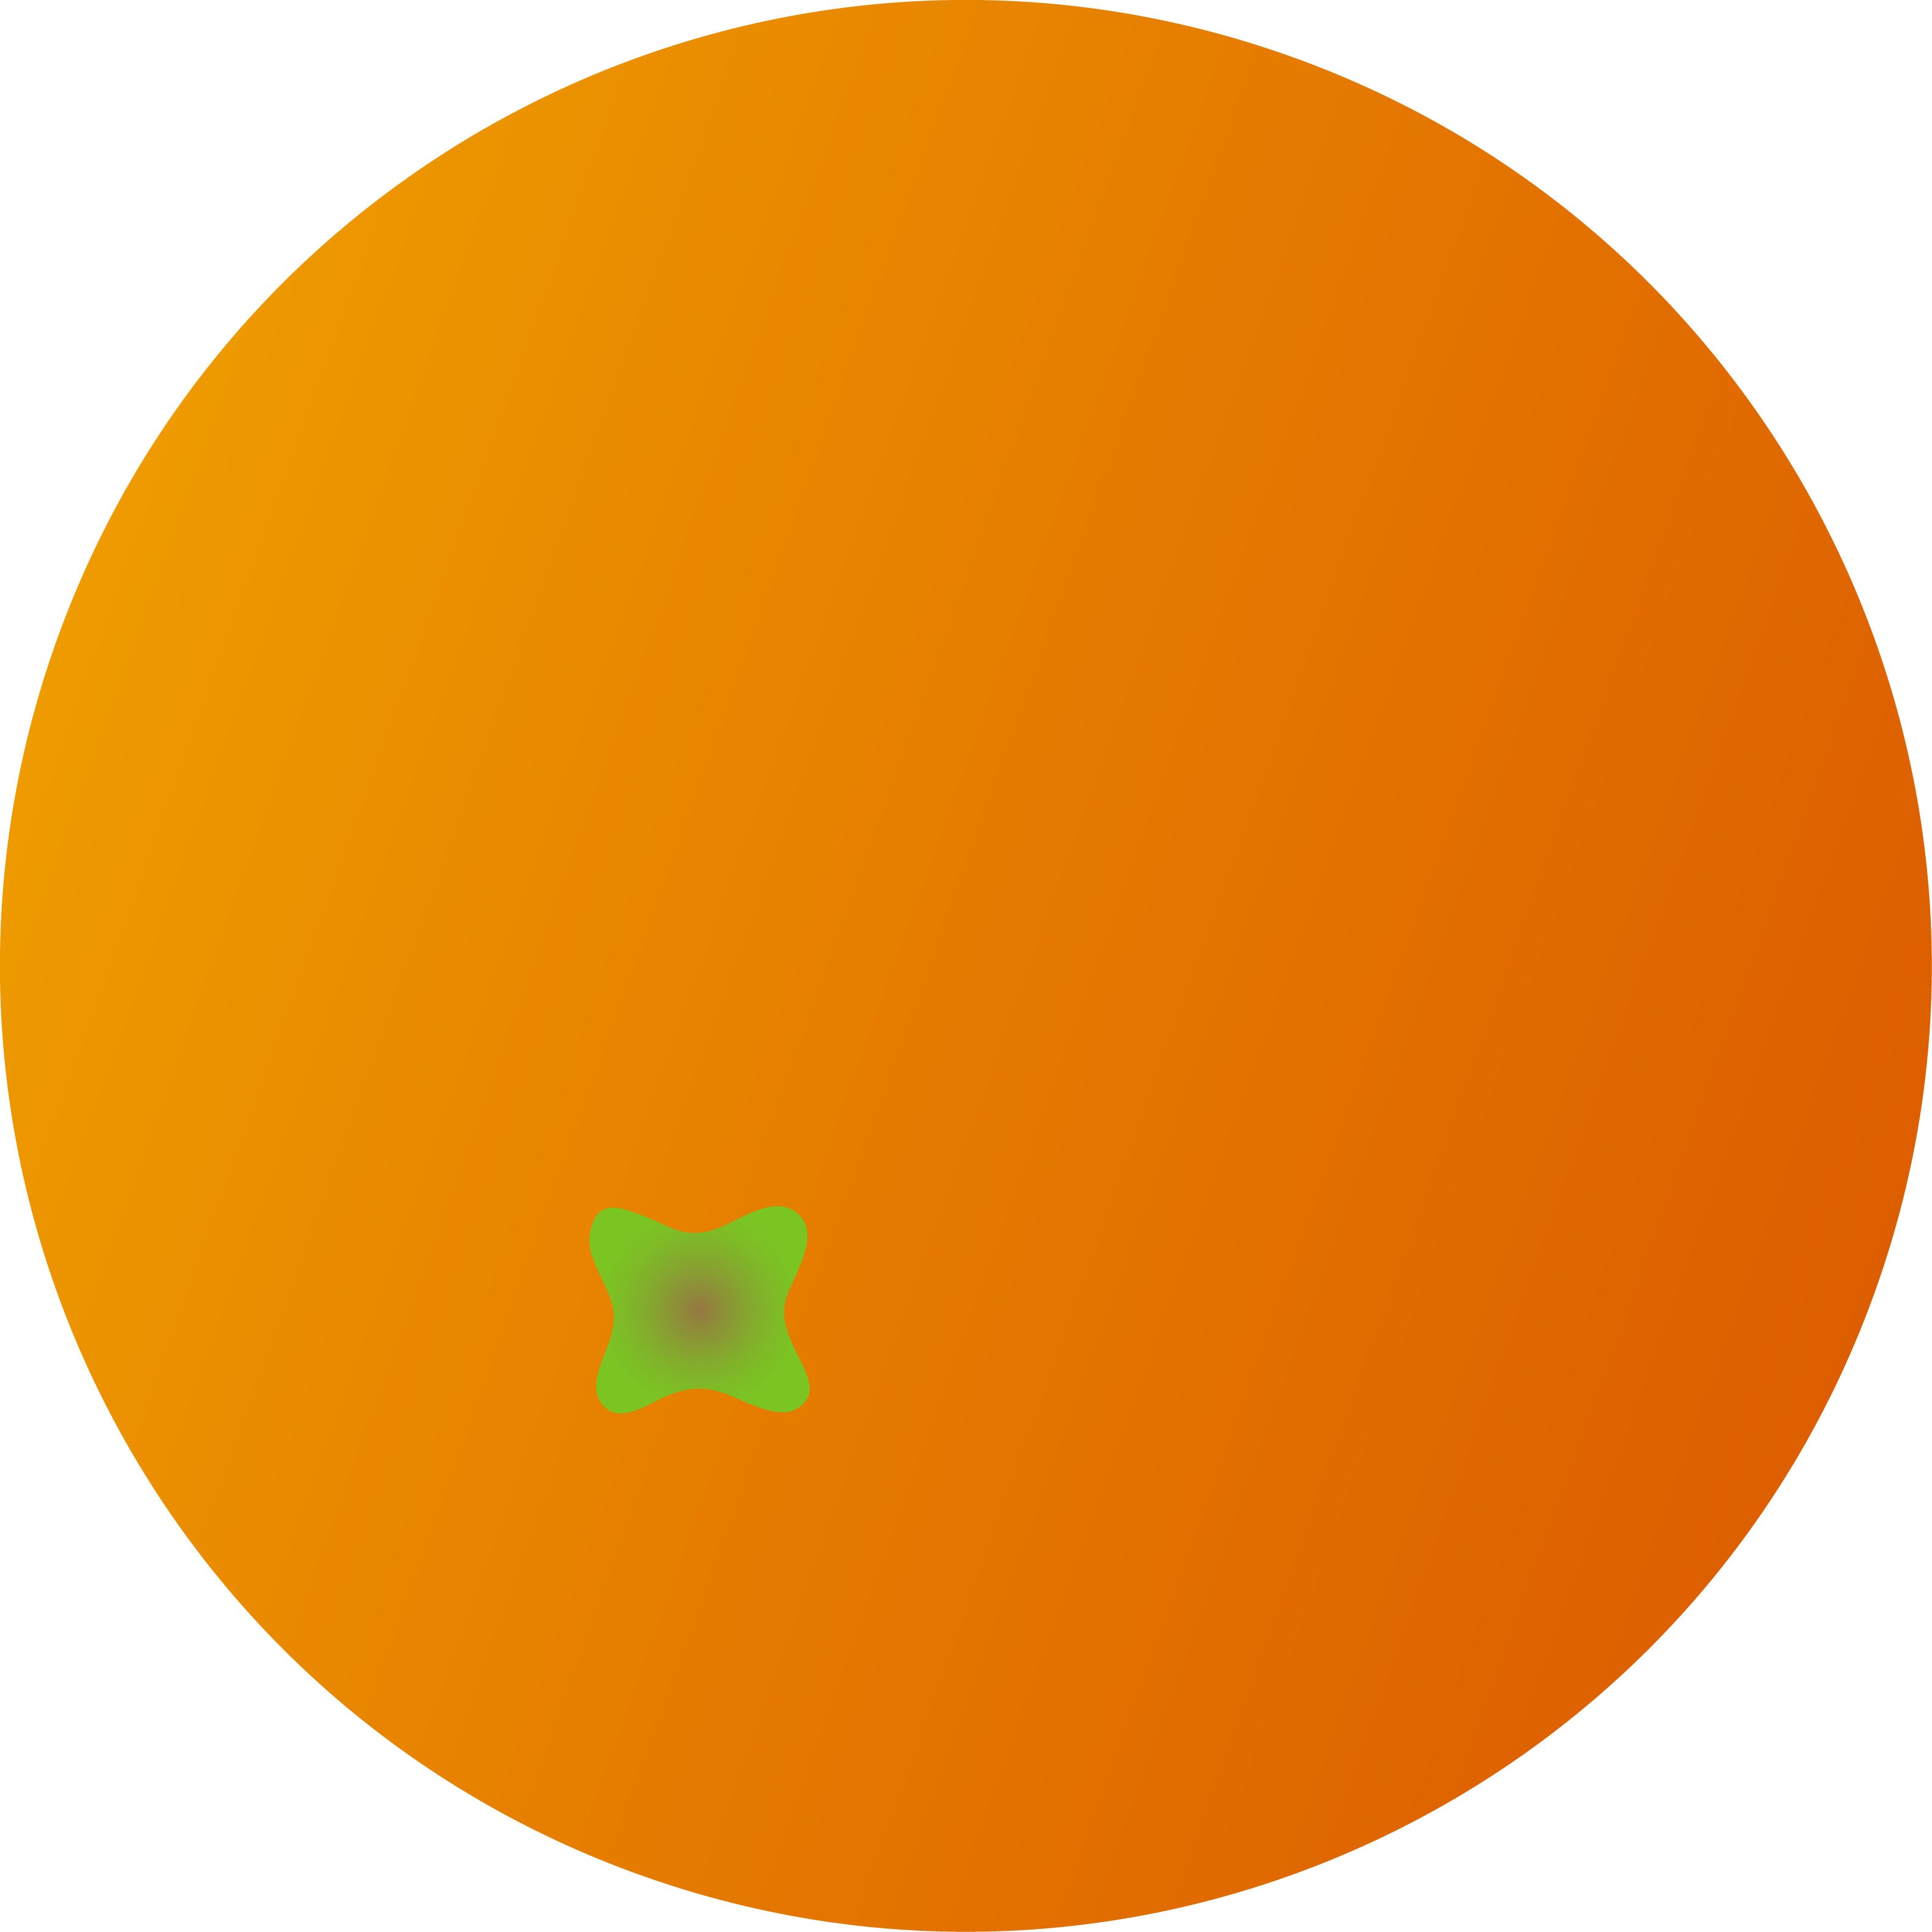 Whole Round Orange Fruit - Free Clip Art